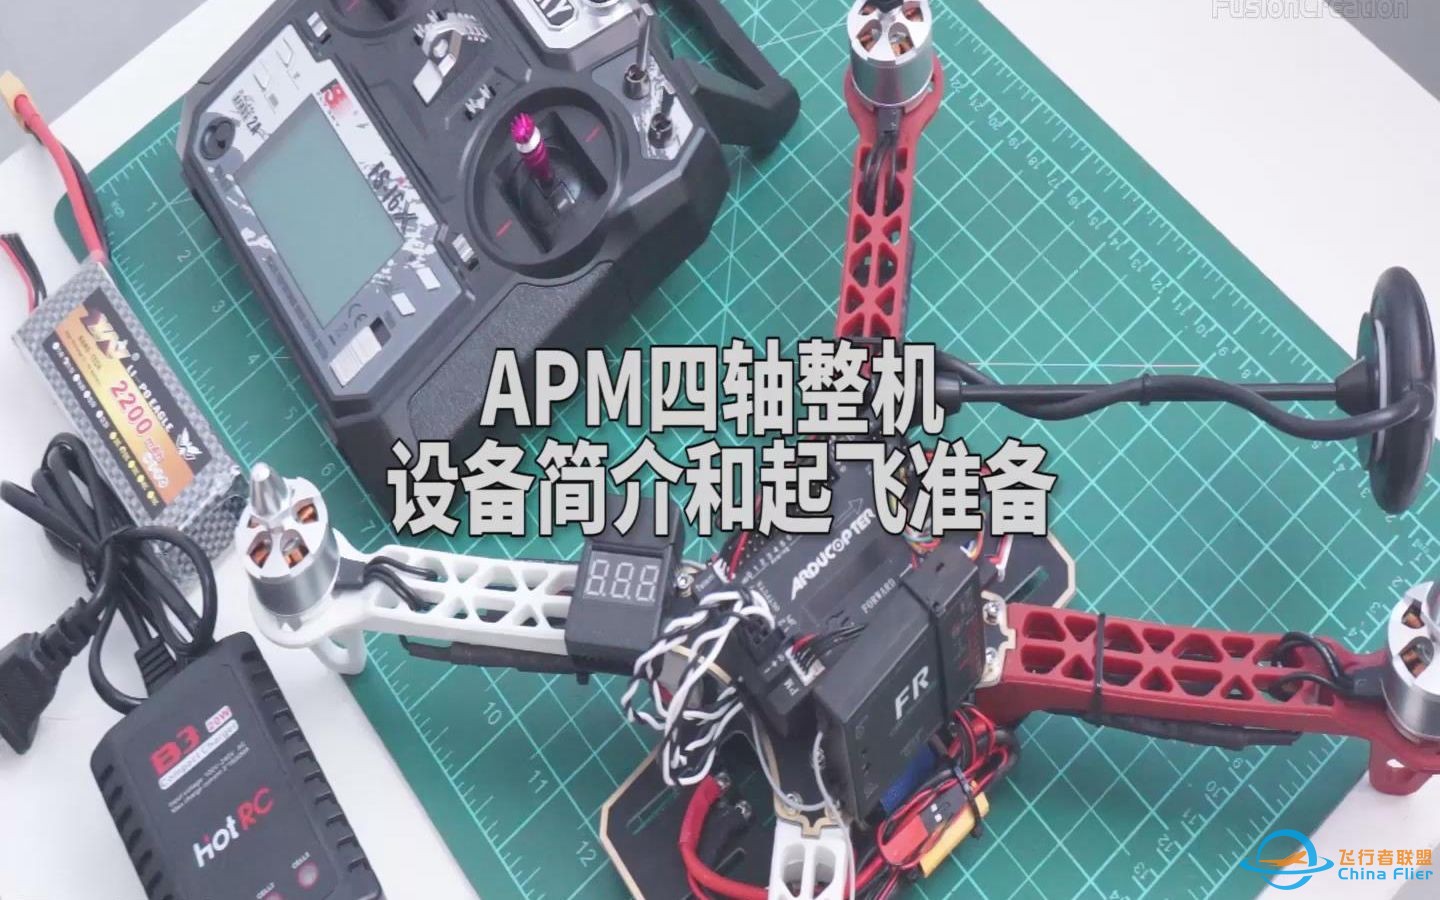 【飞舜极创】APM四轴整机 设备简介和起飞准备-1.jpg